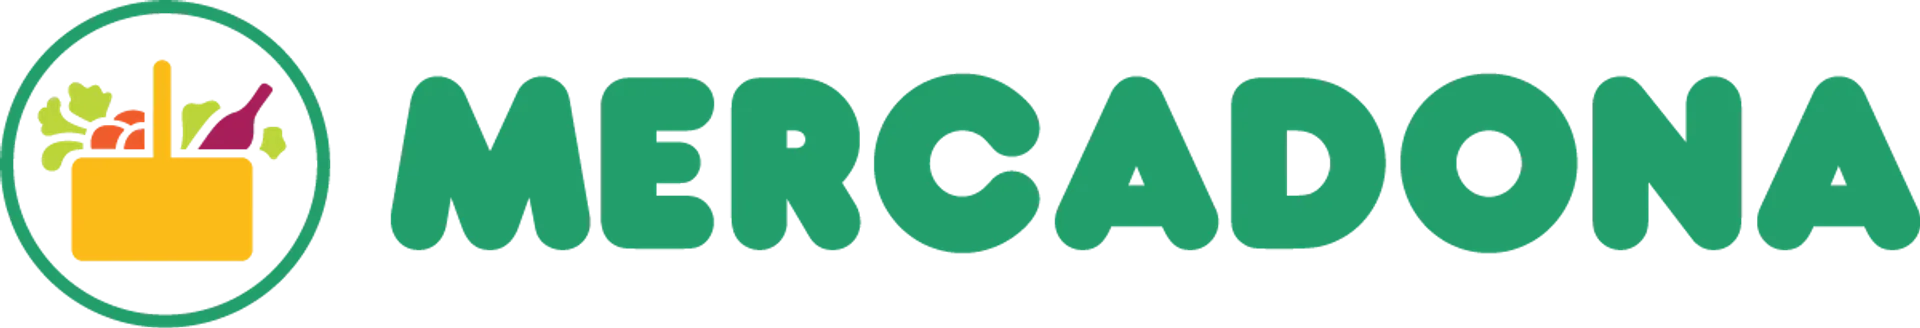 MERCADONA logo